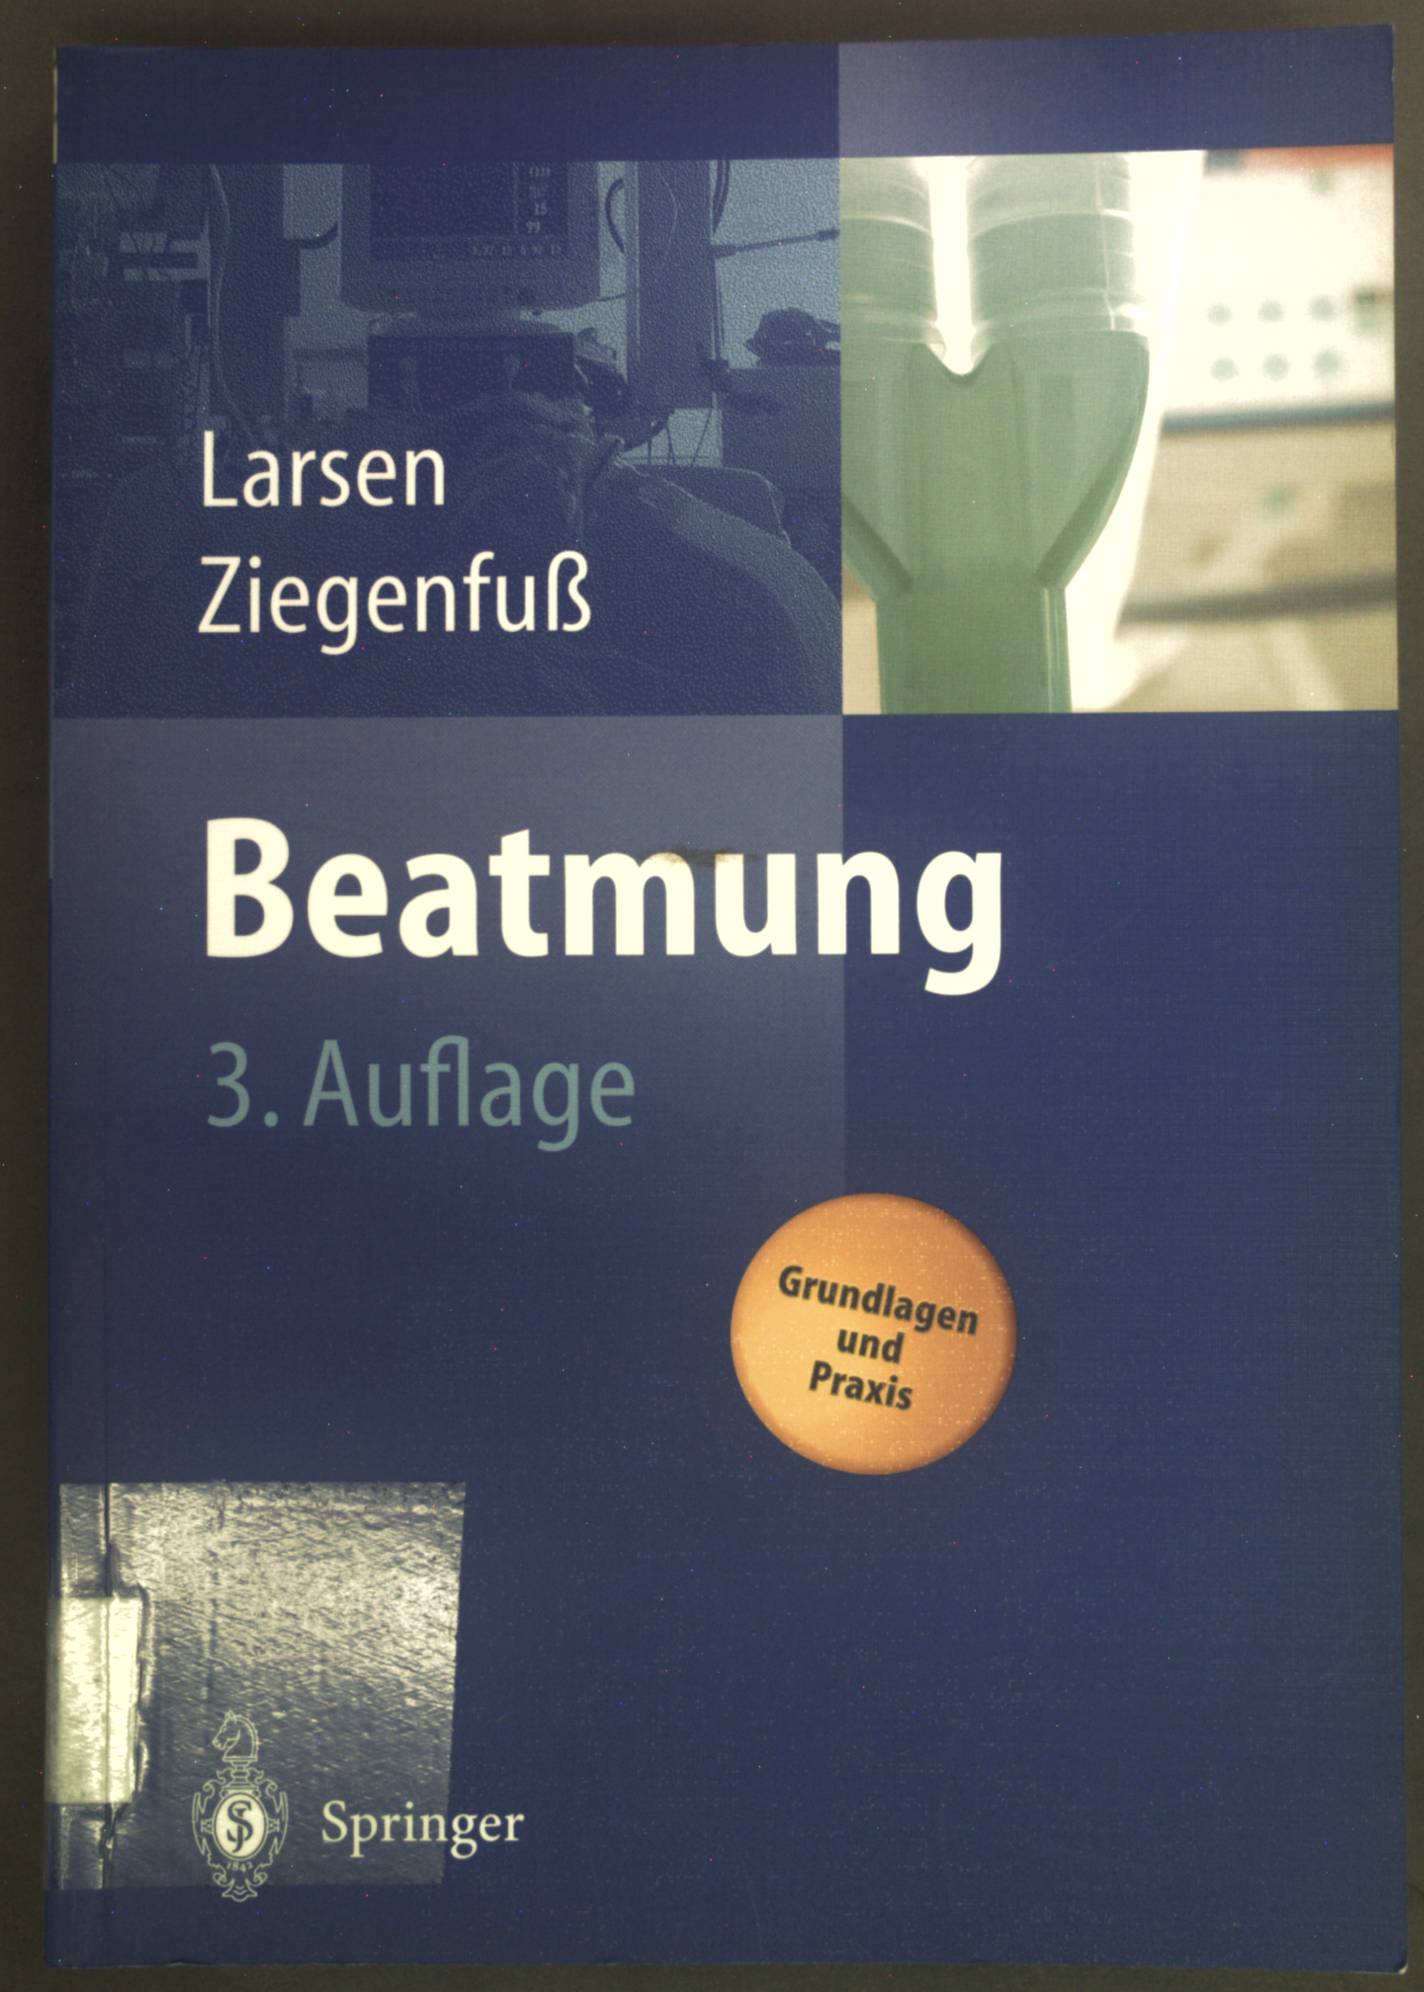 Beatmung : Grundlagen und Praxis. - Larsen, Reinhard und Thomas Ziegenfuß